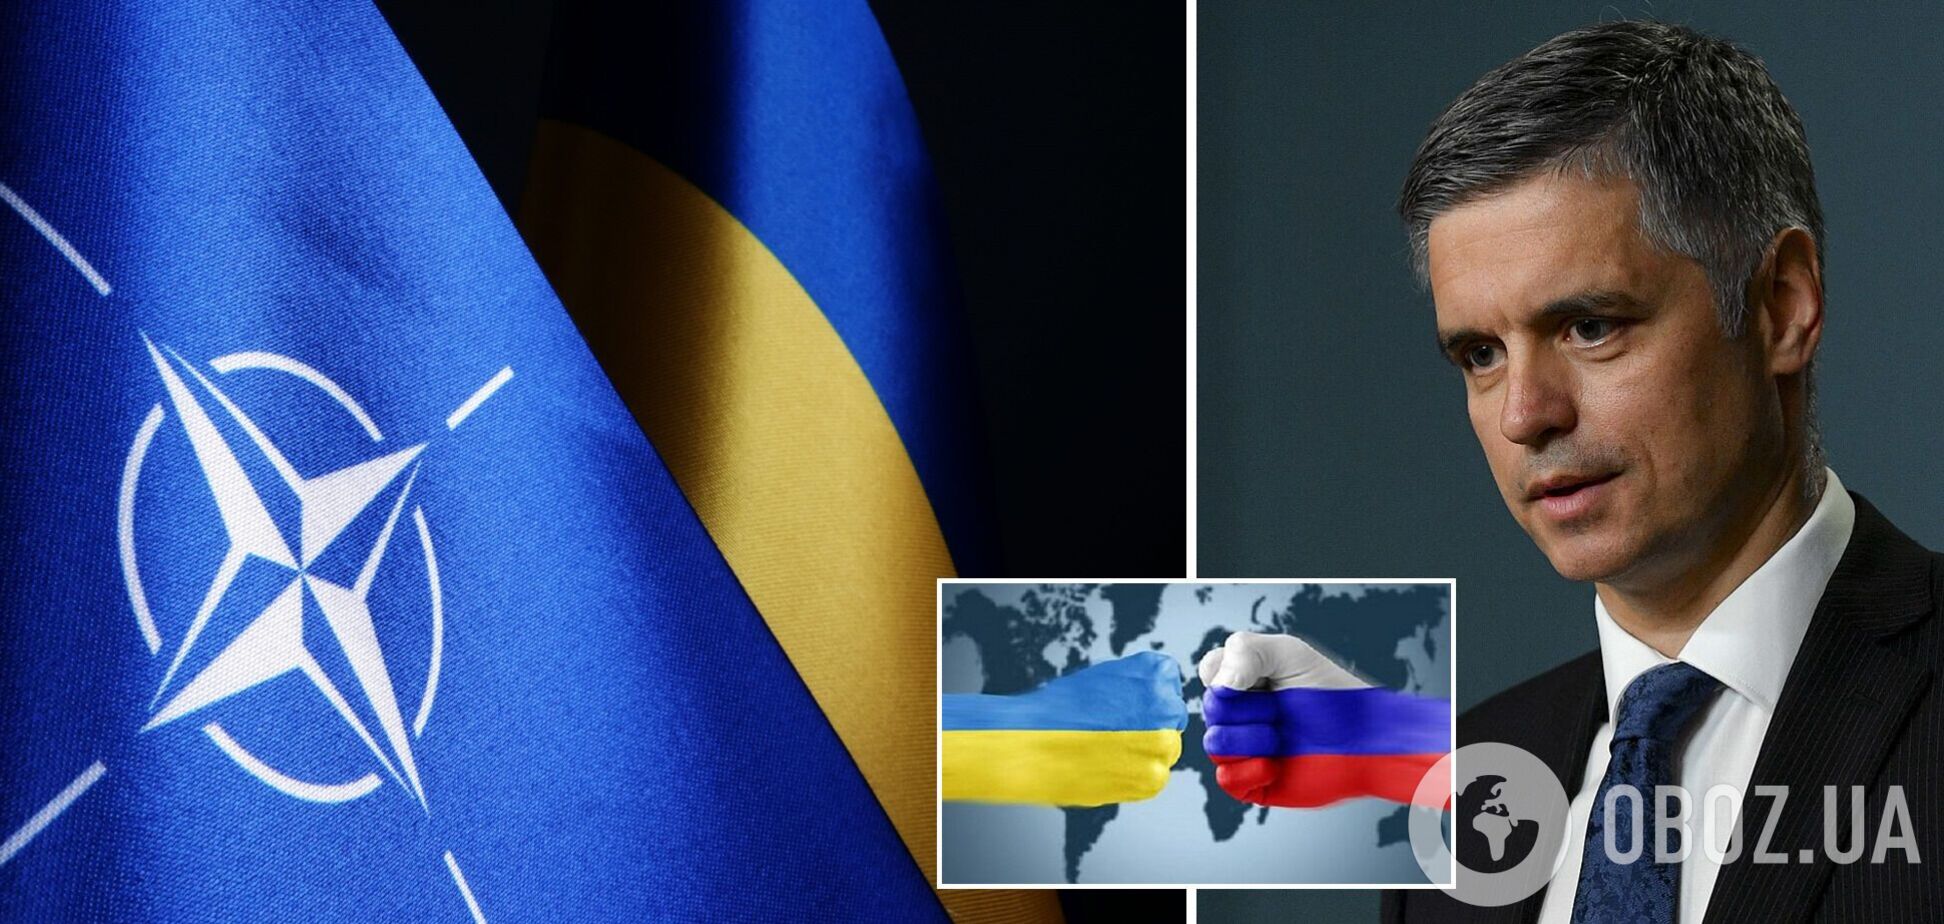 Пристайко отметился скандальным заявлением о вступлении Украины в НАТО: у Зеленского и МИД отреагировали